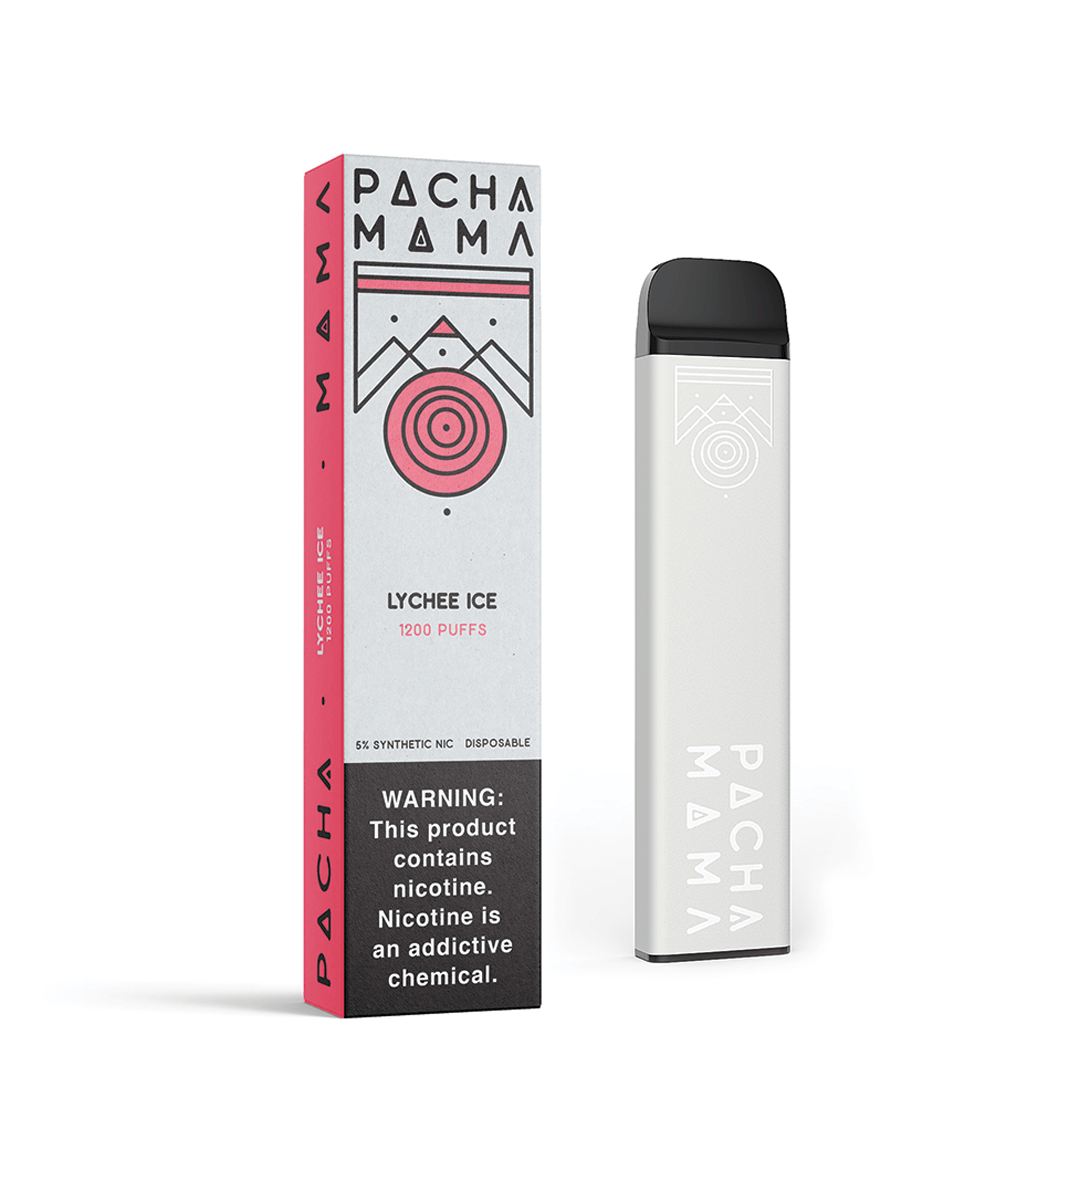 Pachamama Disposable Vape Lychee Ice Pachamama Disposable Vape (5%, 1200 Puffs)